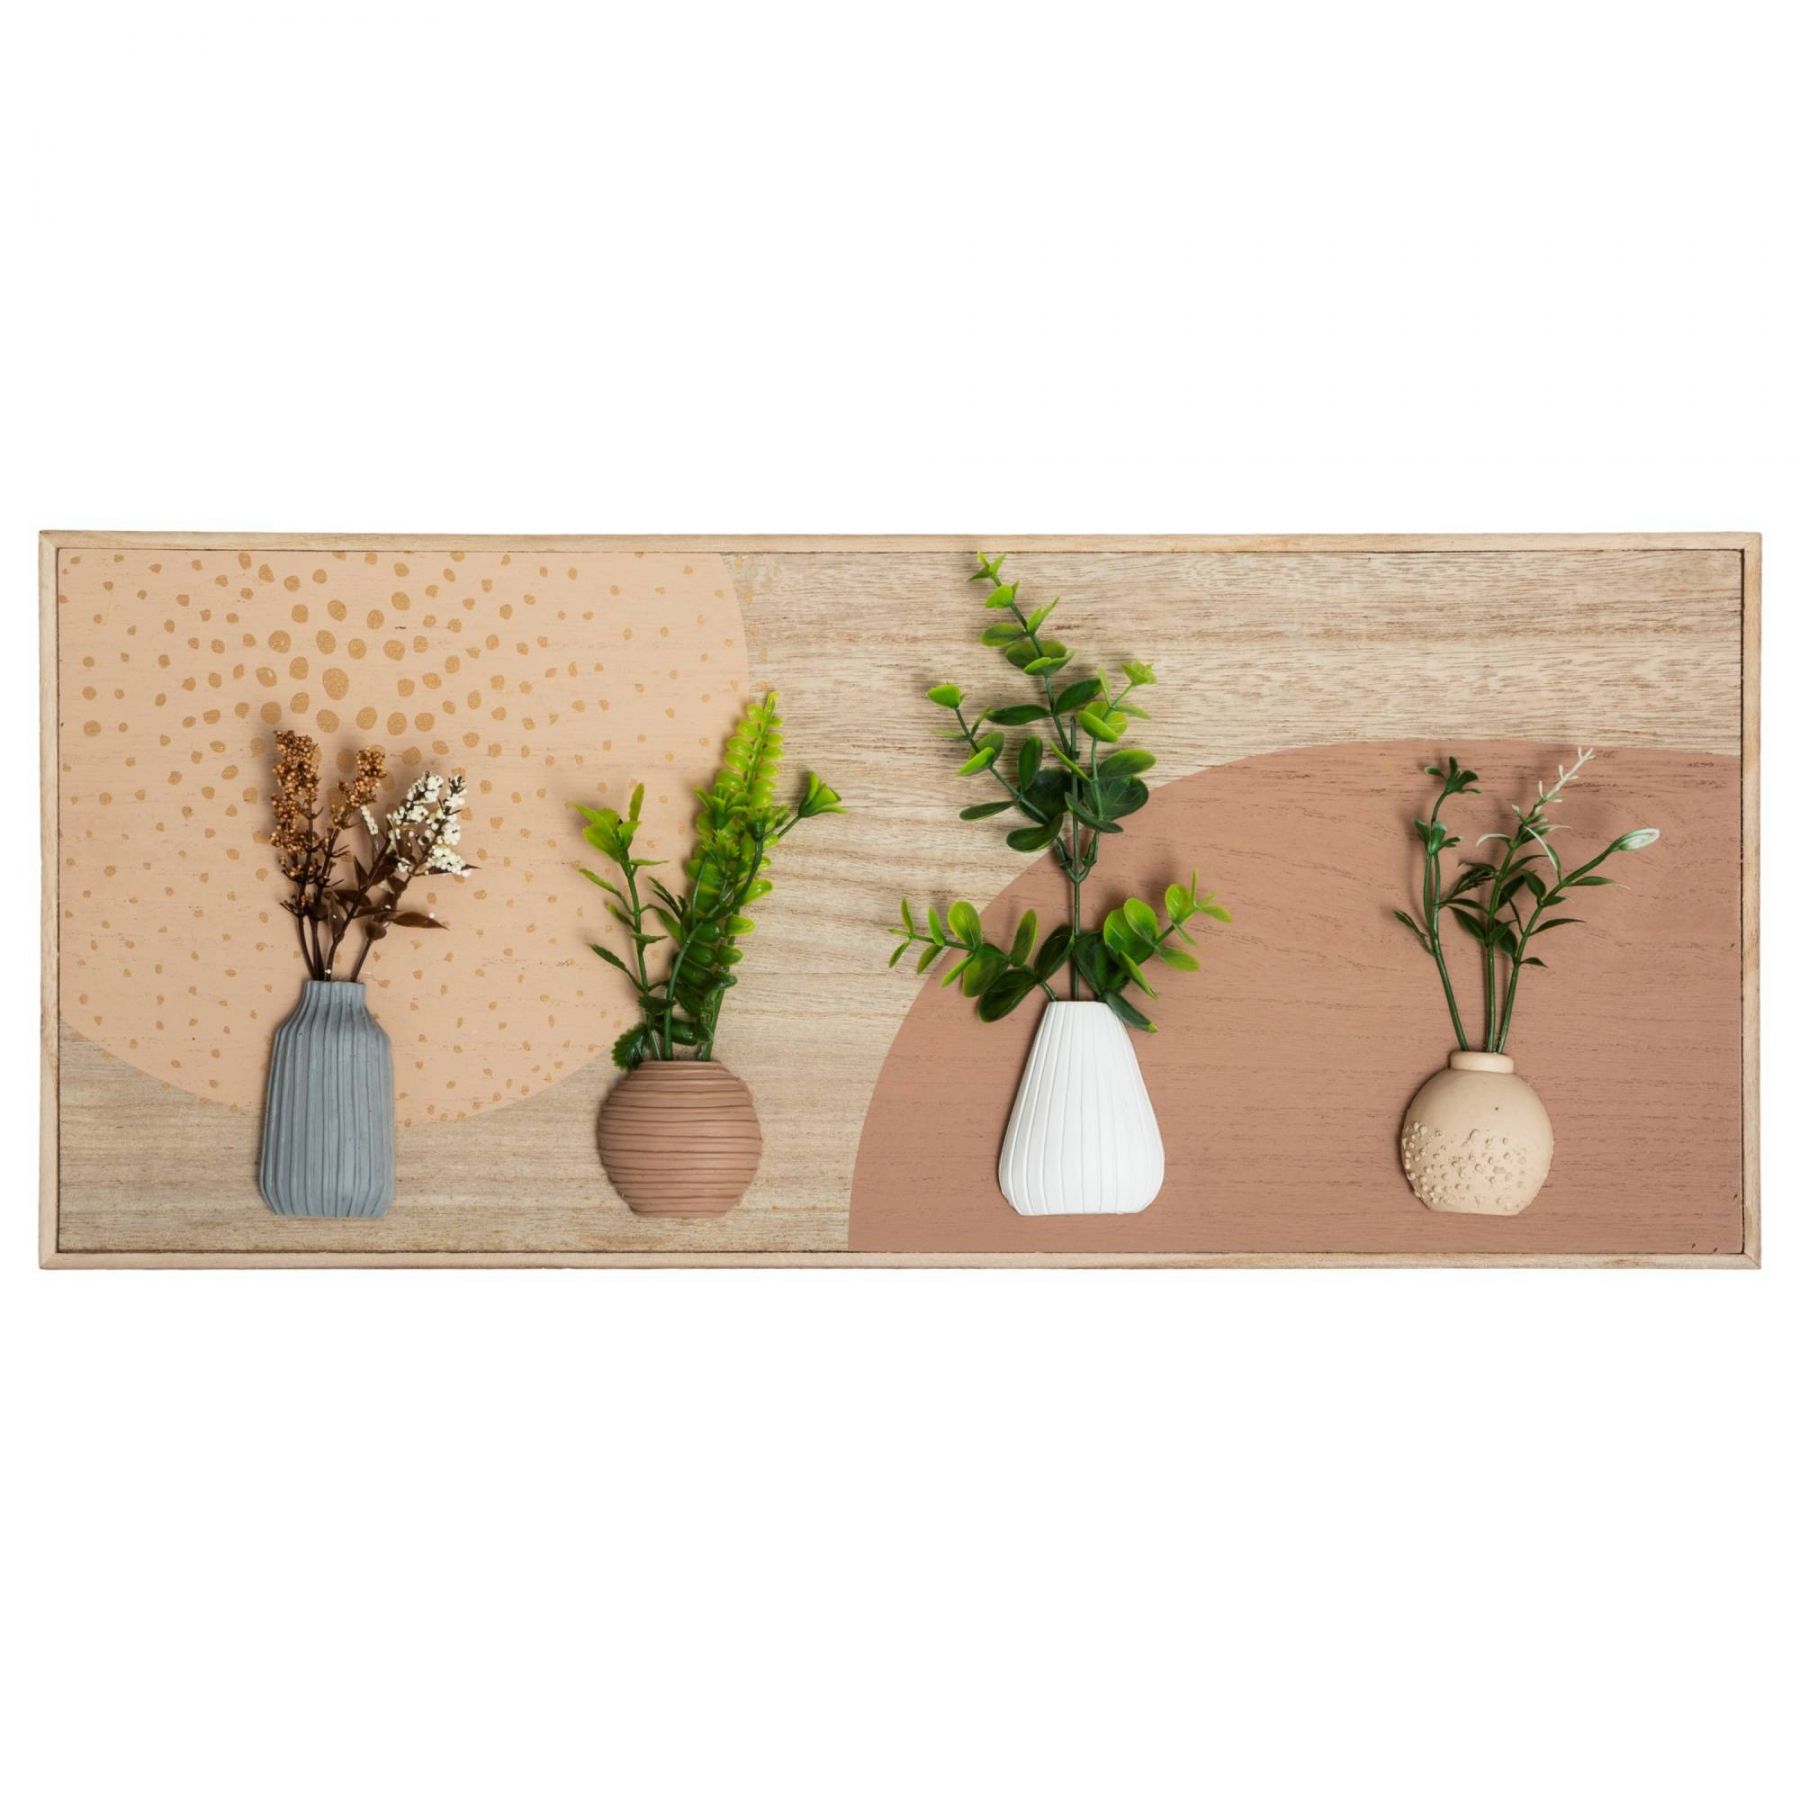 Atmosphera Nástěnná dekorace 3D, rostliny ve vázách s květinami - EMAKO.CZ s.r.o.